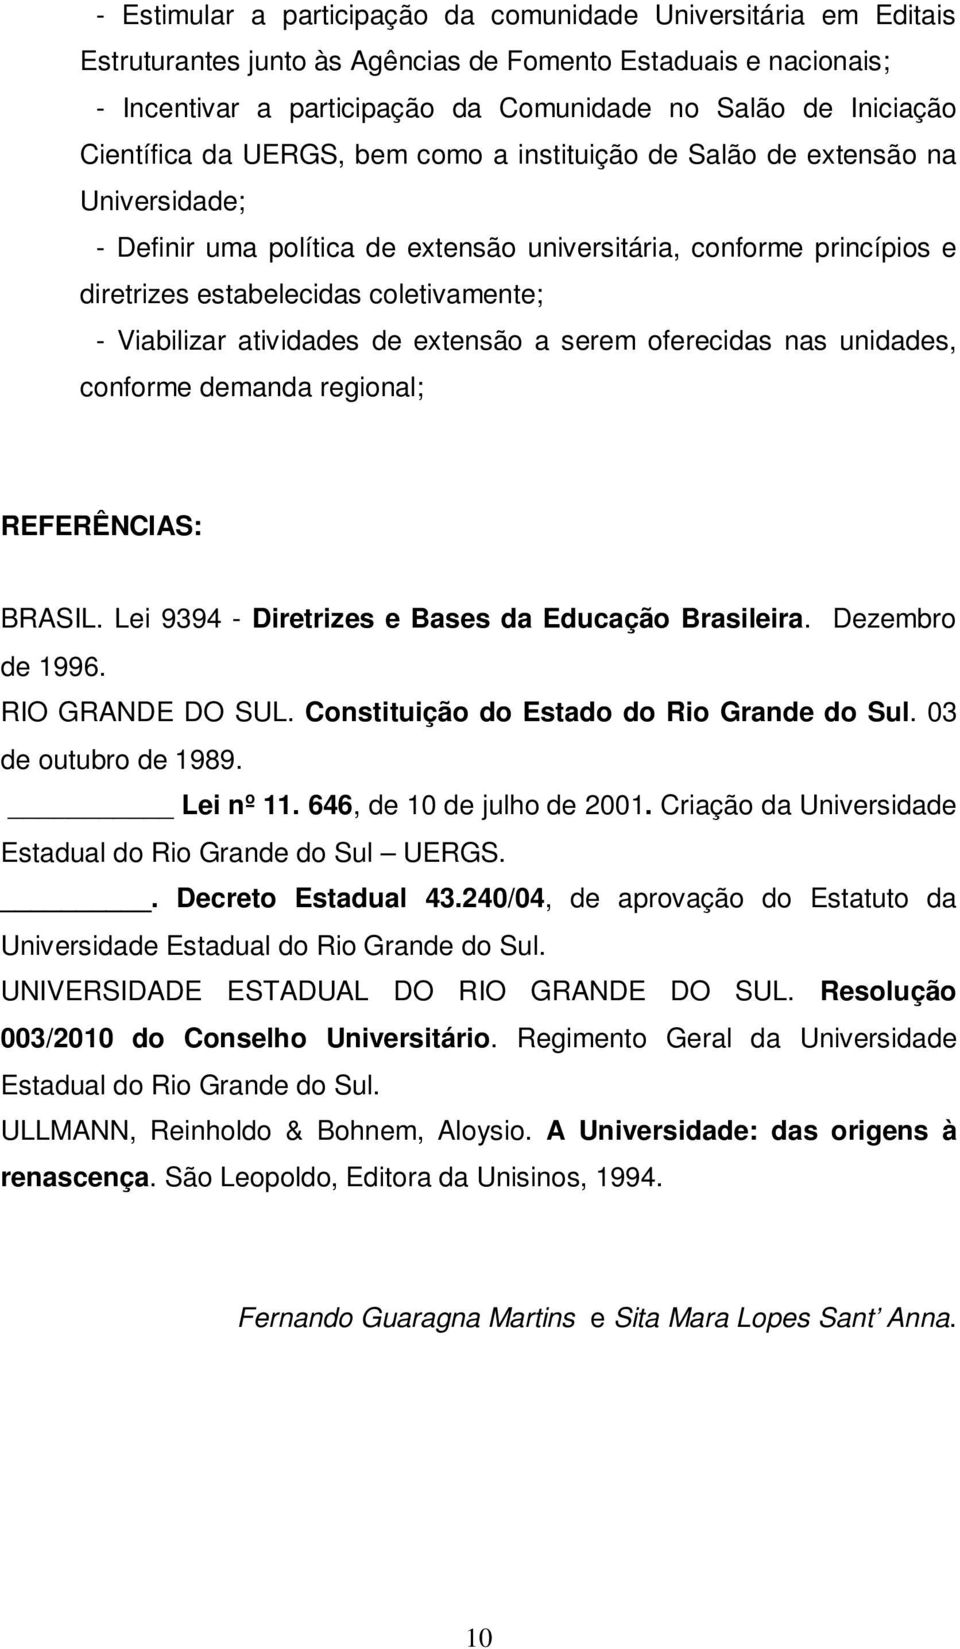 Viabilizar atividades de extensão a serem oferecidas nas unidades, conforme demanda regional; REFERÊNCIAS: BRASIL. Lei 9394 - Diretrizes e Bases da Educação Brasileira. Dezembro de 1996.